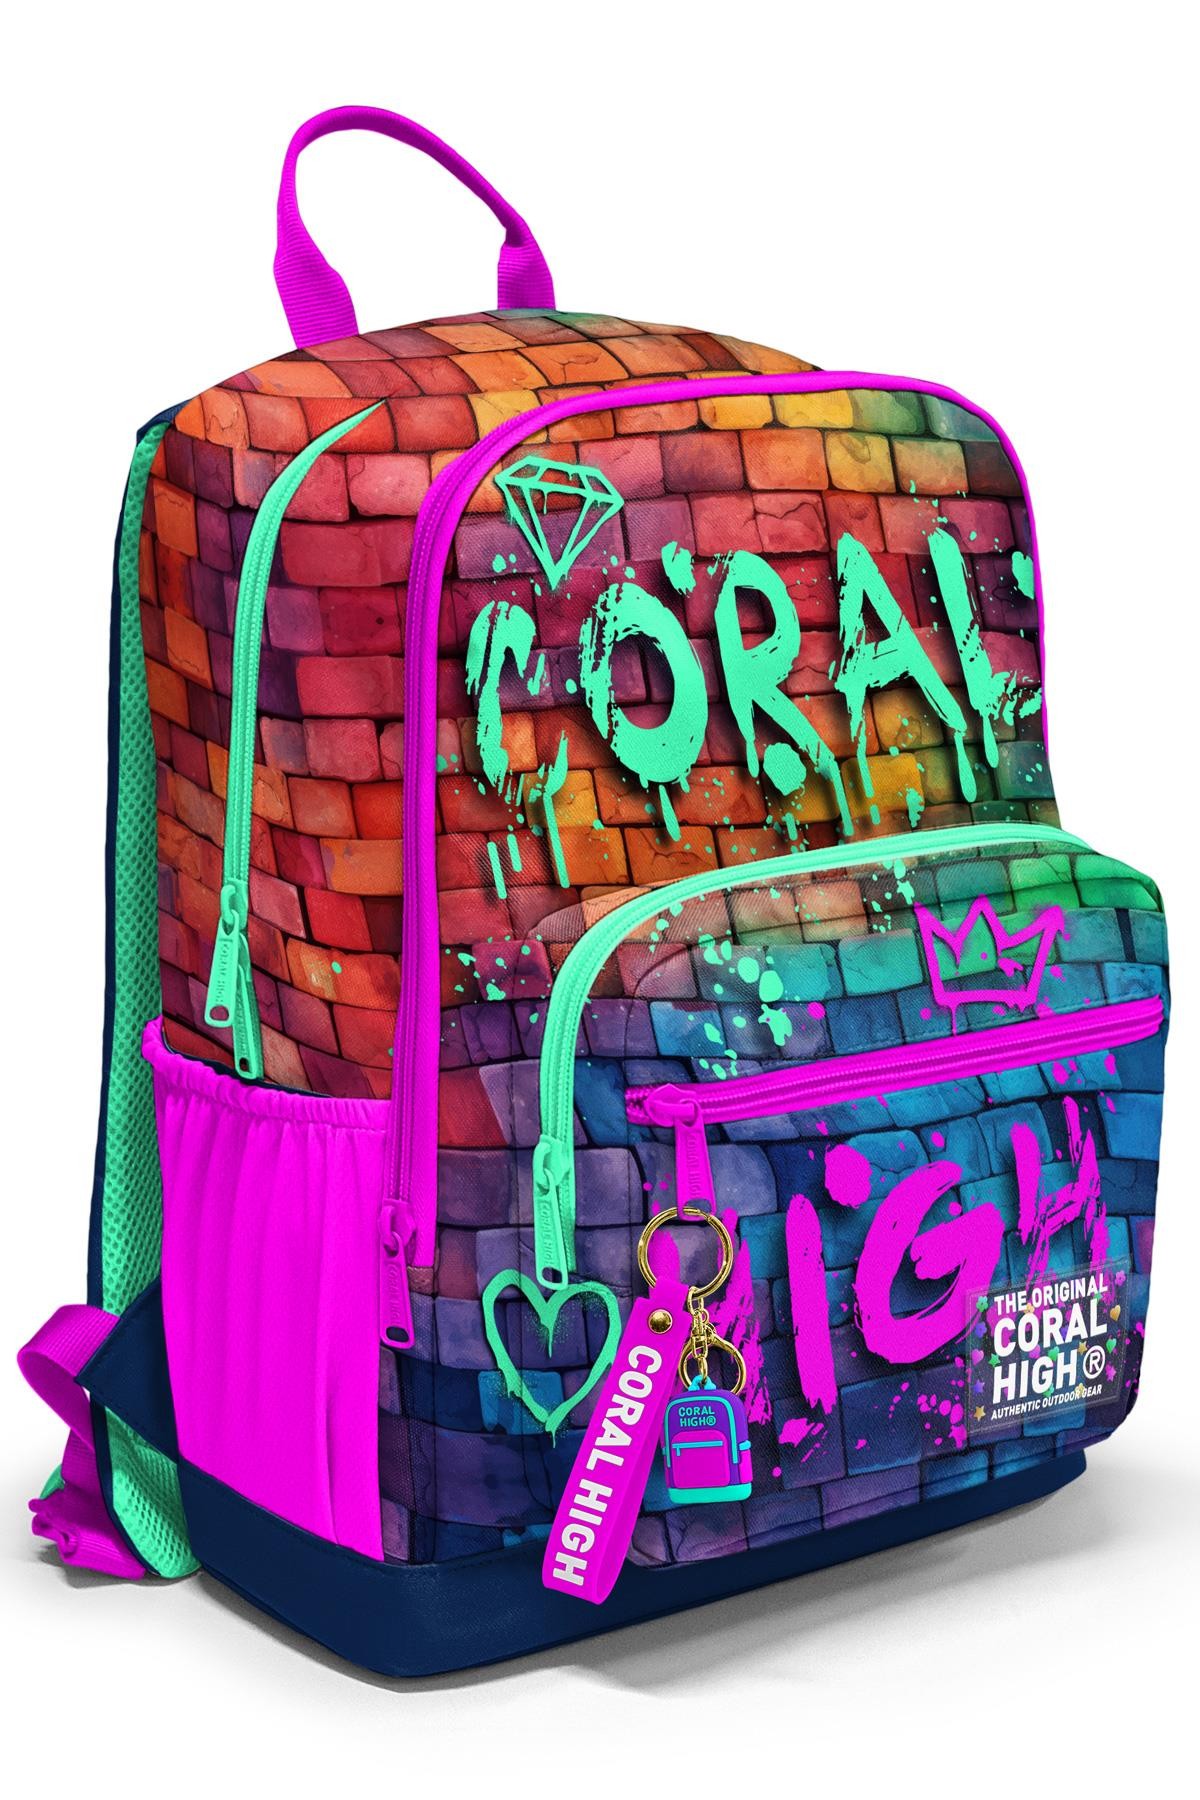 Coral High Pembe Lacivert Grafiti Yazılı Okul Sırt Çantası 23629